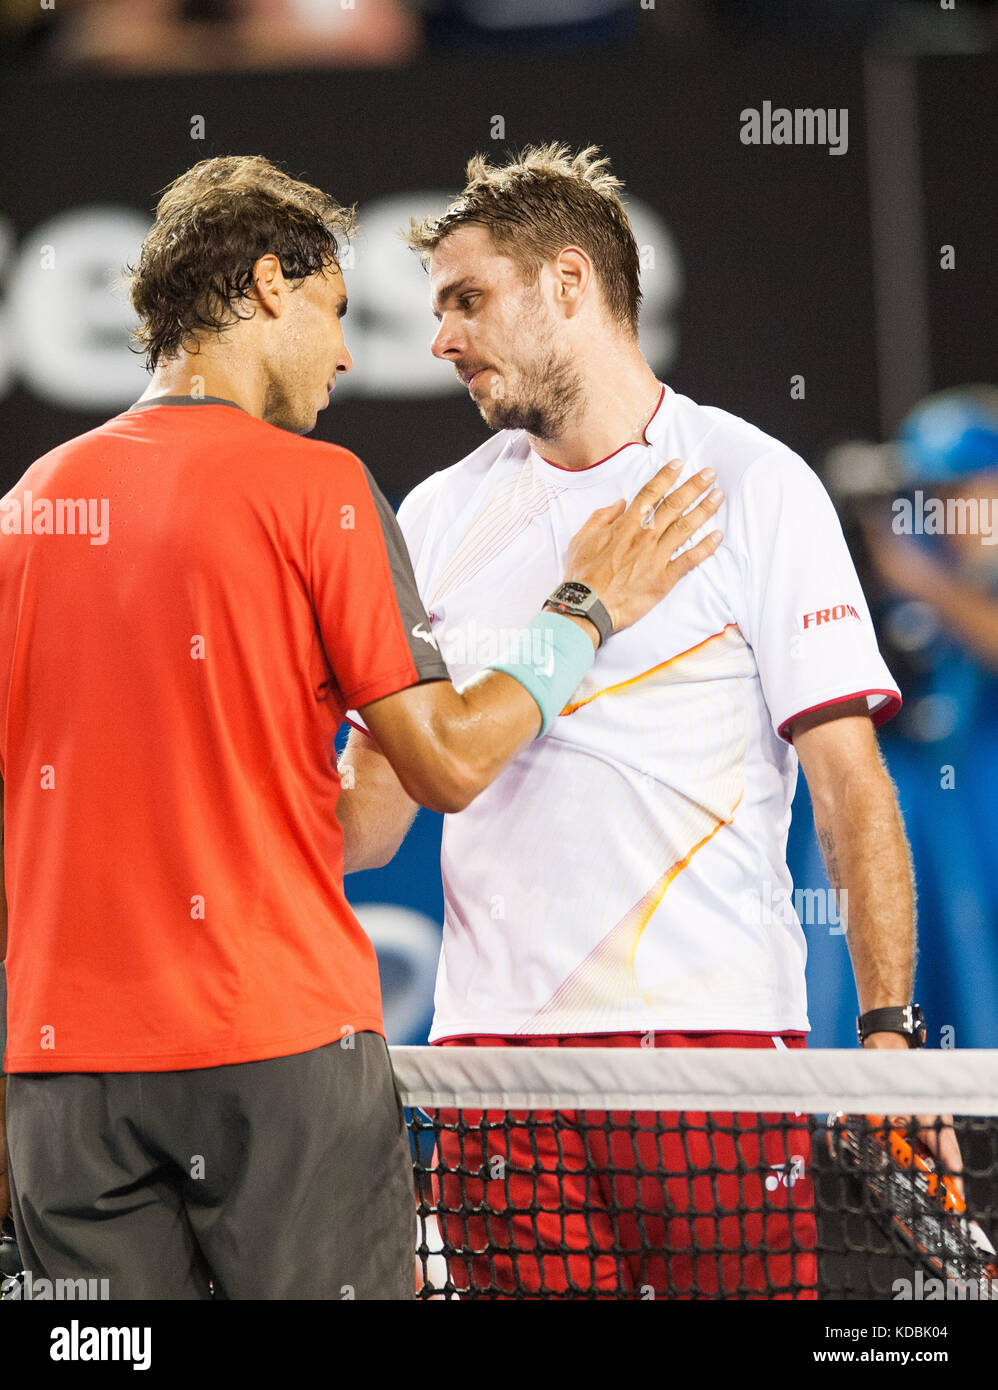 Stanislaus Wawrinka de Suiza (derecha) derrotó al jugador número uno en el mundo R. Nadal (izquierda) de España para reclamar el Abierto de Australia de 2014' Foto de stock